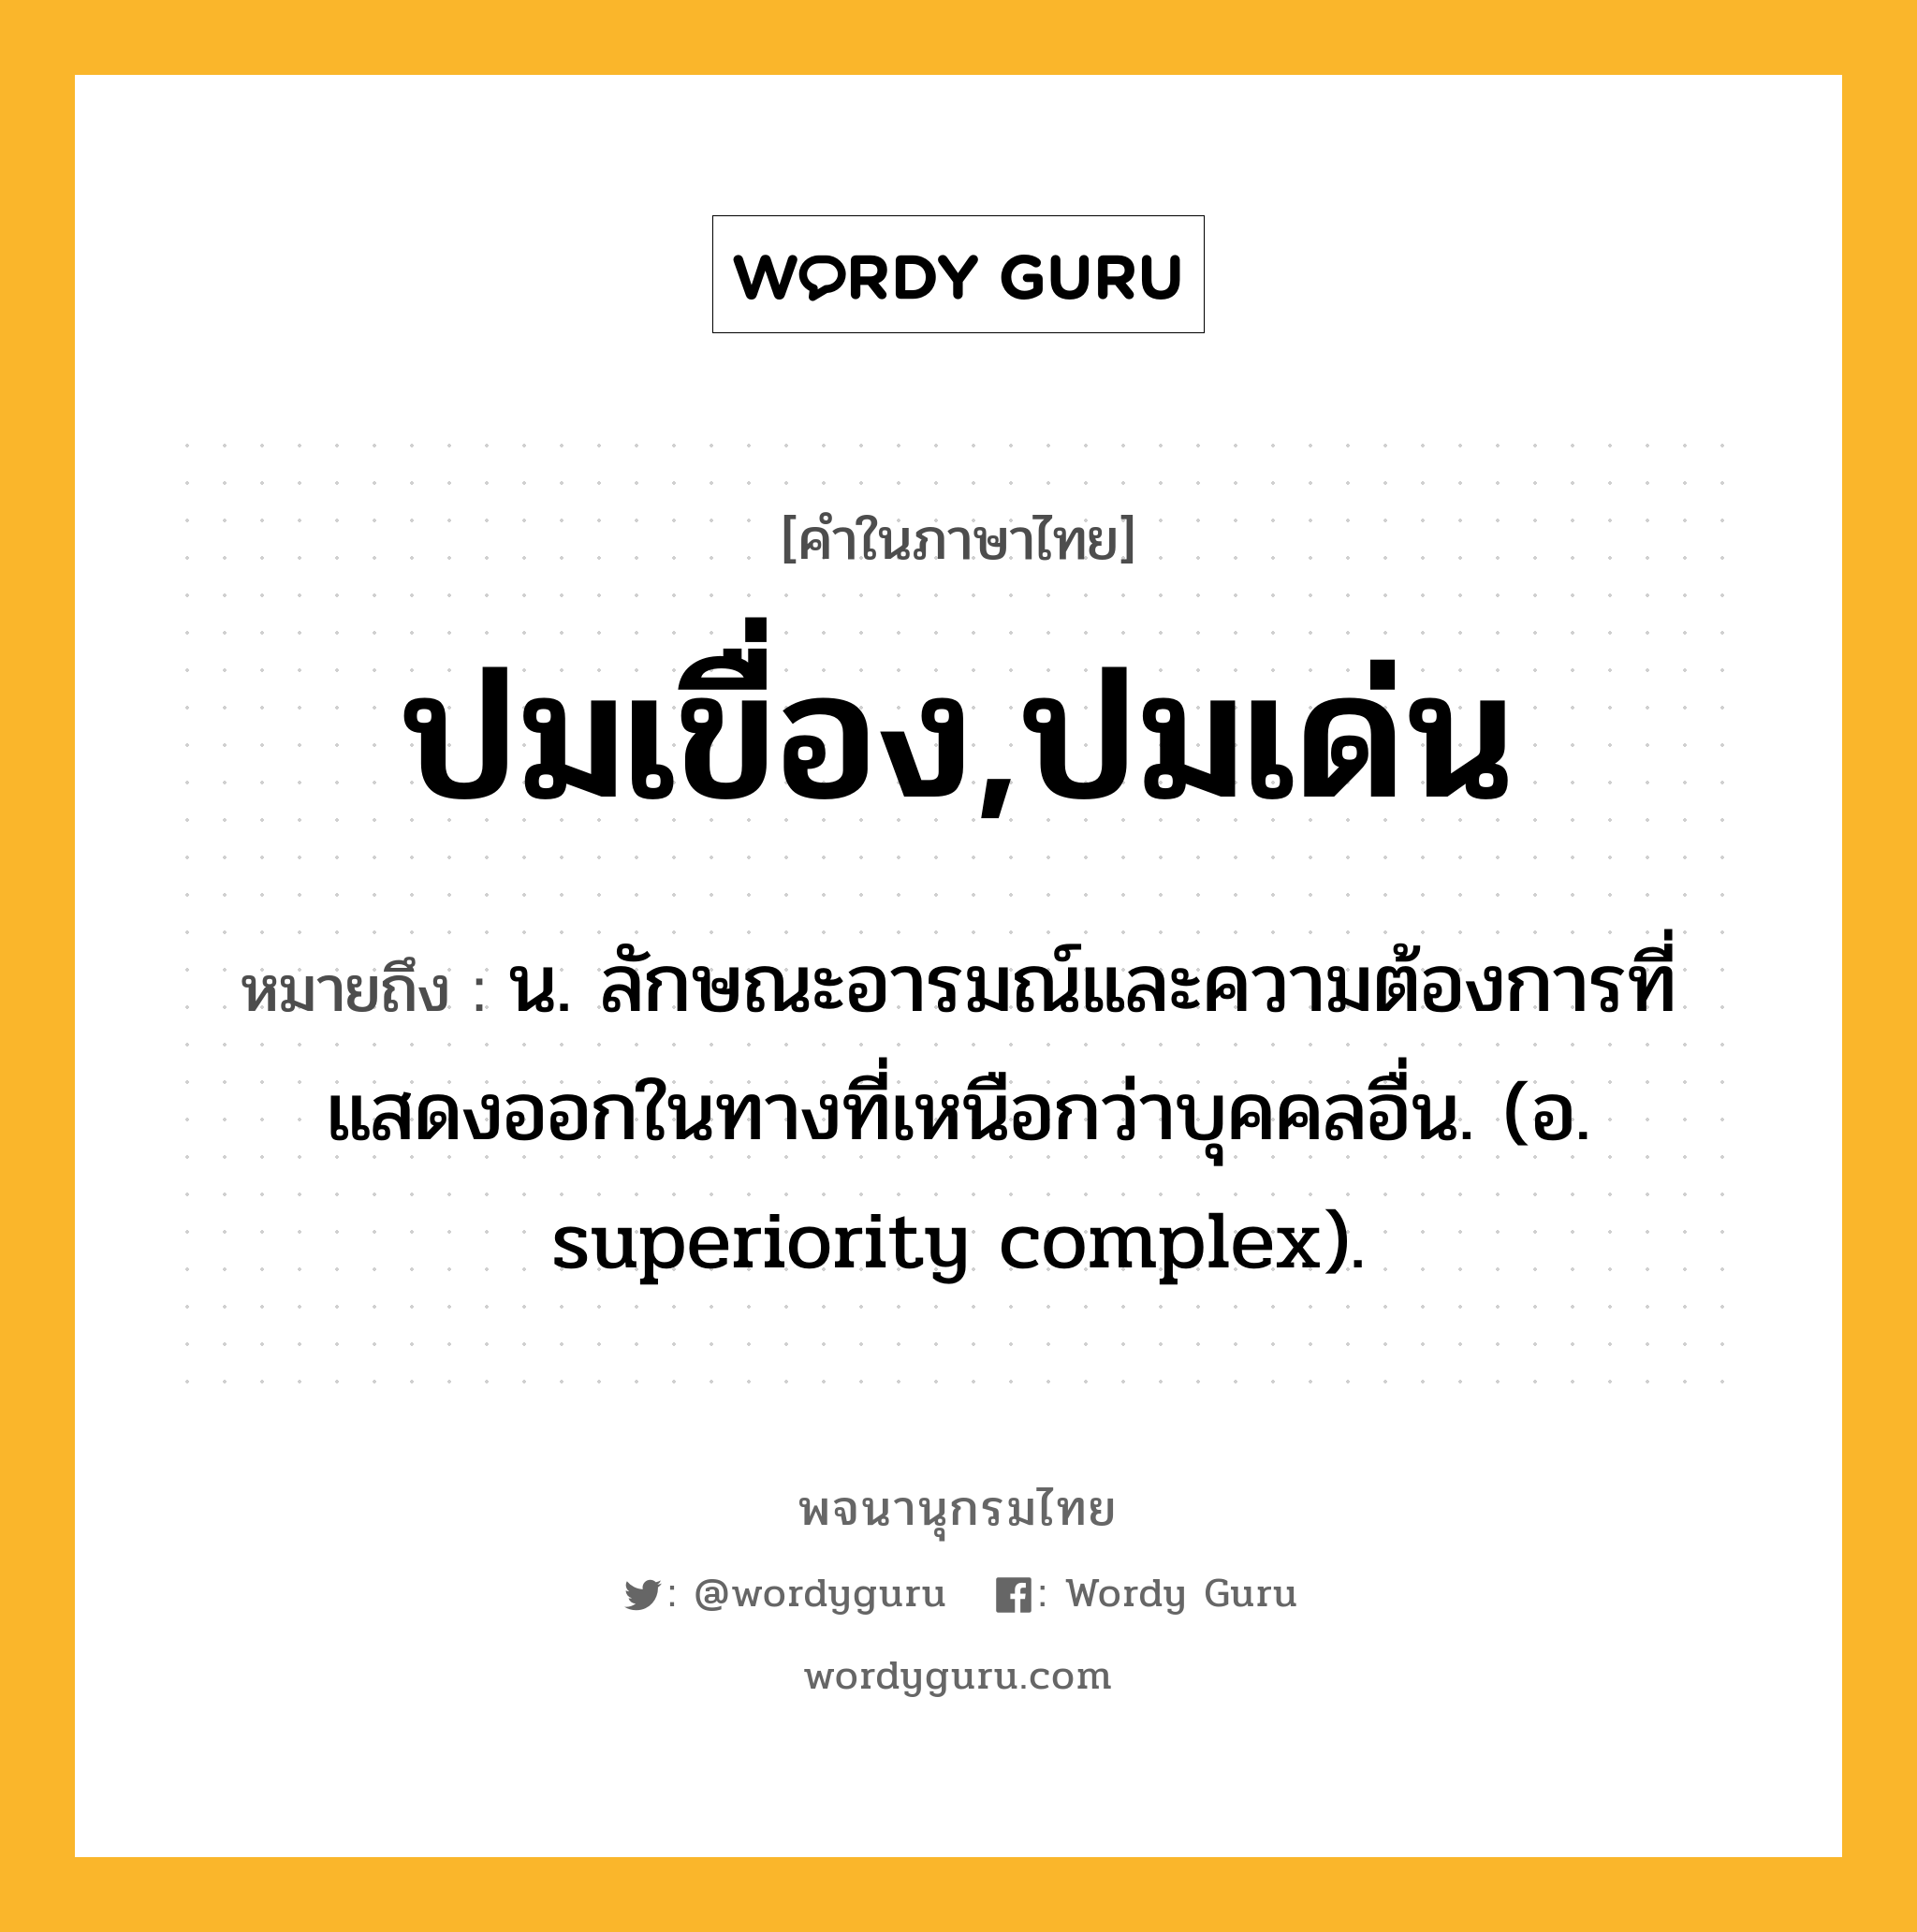 ปมเขื่อง,ปมเด่น หมายถึงอะไร?, คำในภาษาไทย ปมเขื่อง,ปมเด่น หมายถึง น. ลักษณะอารมณ์และความต้องการที่แสดงออกในทางที่เหนือกว่าบุคคลอื่น. (อ. superiority complex).